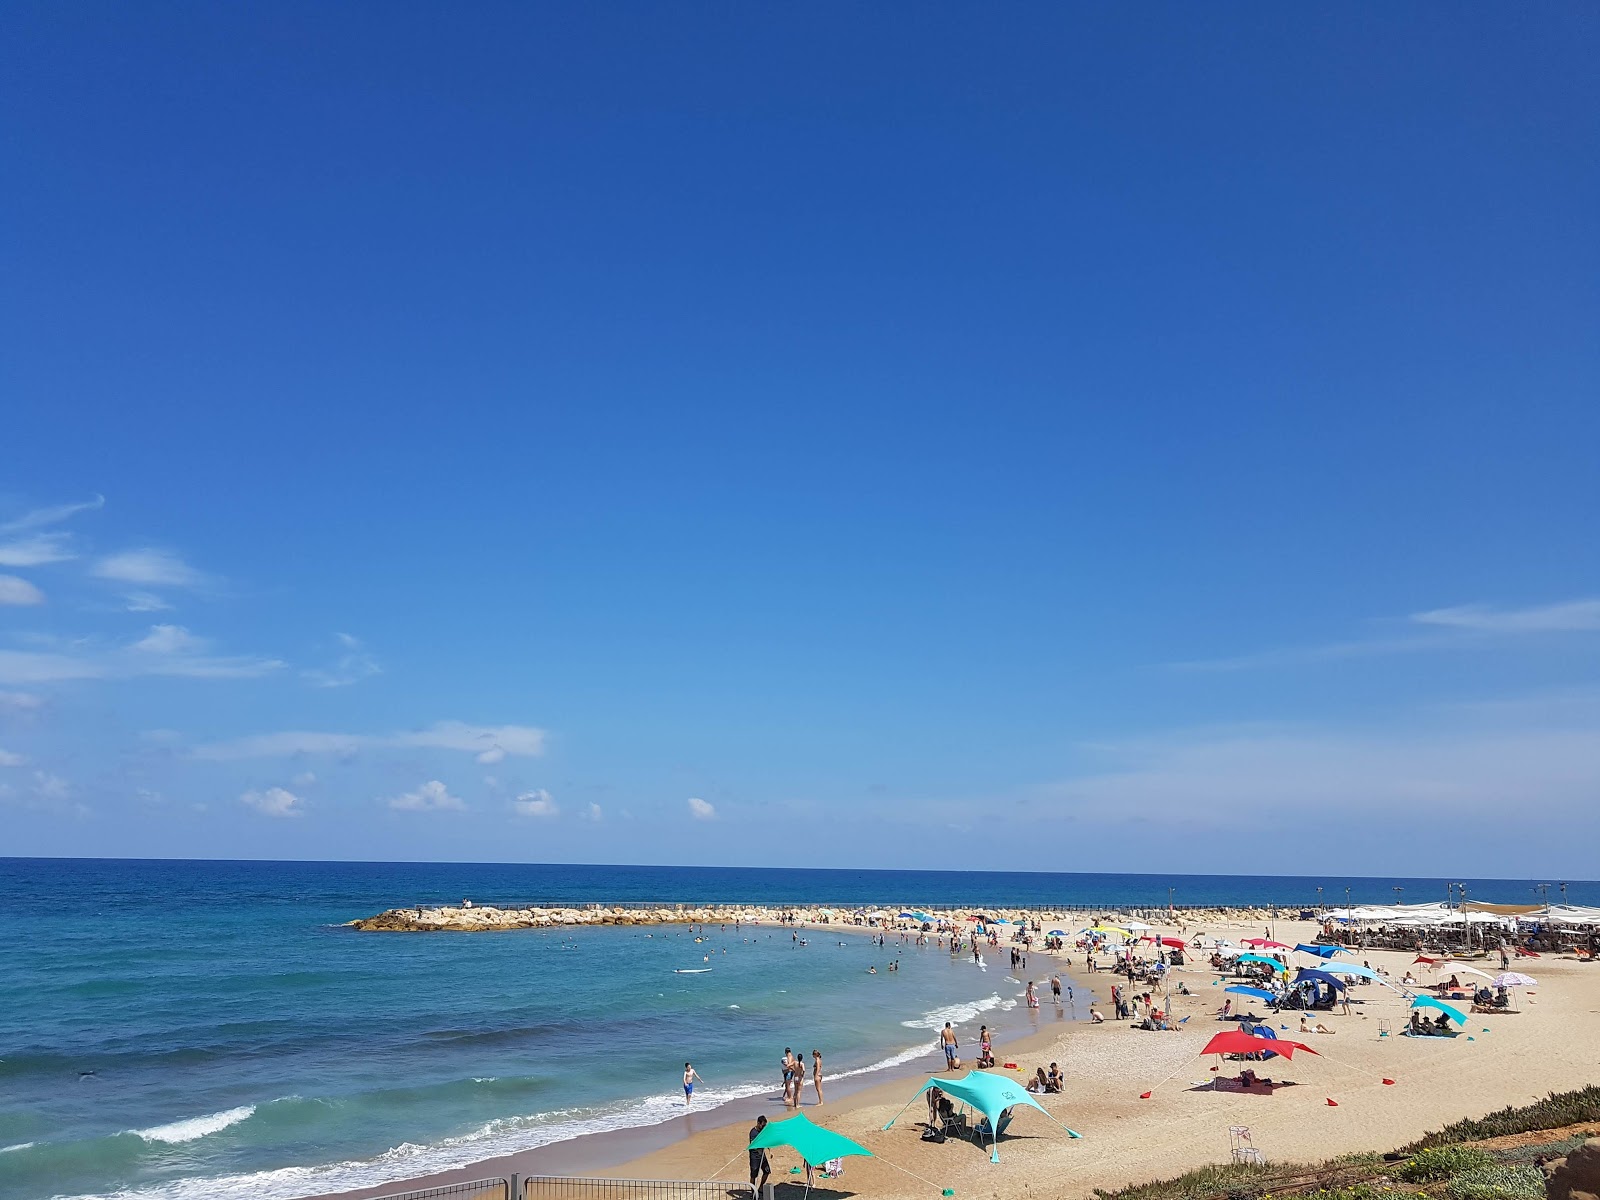 Tel Baruch beach'in fotoğrafı doğrudan plaj ile birlikte